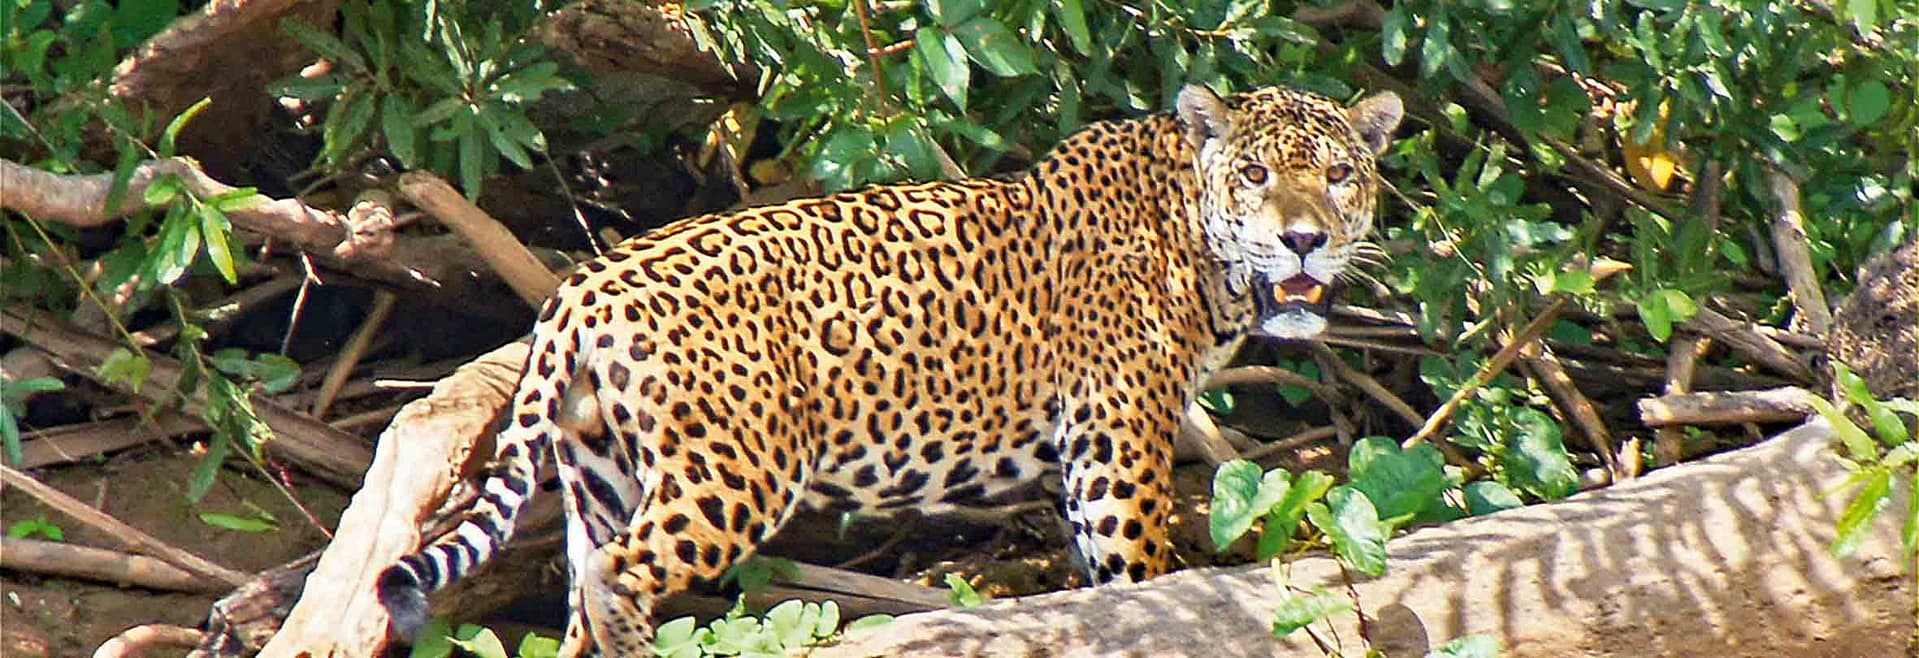 Jaguar-Safari im Pantanal, Brasilien